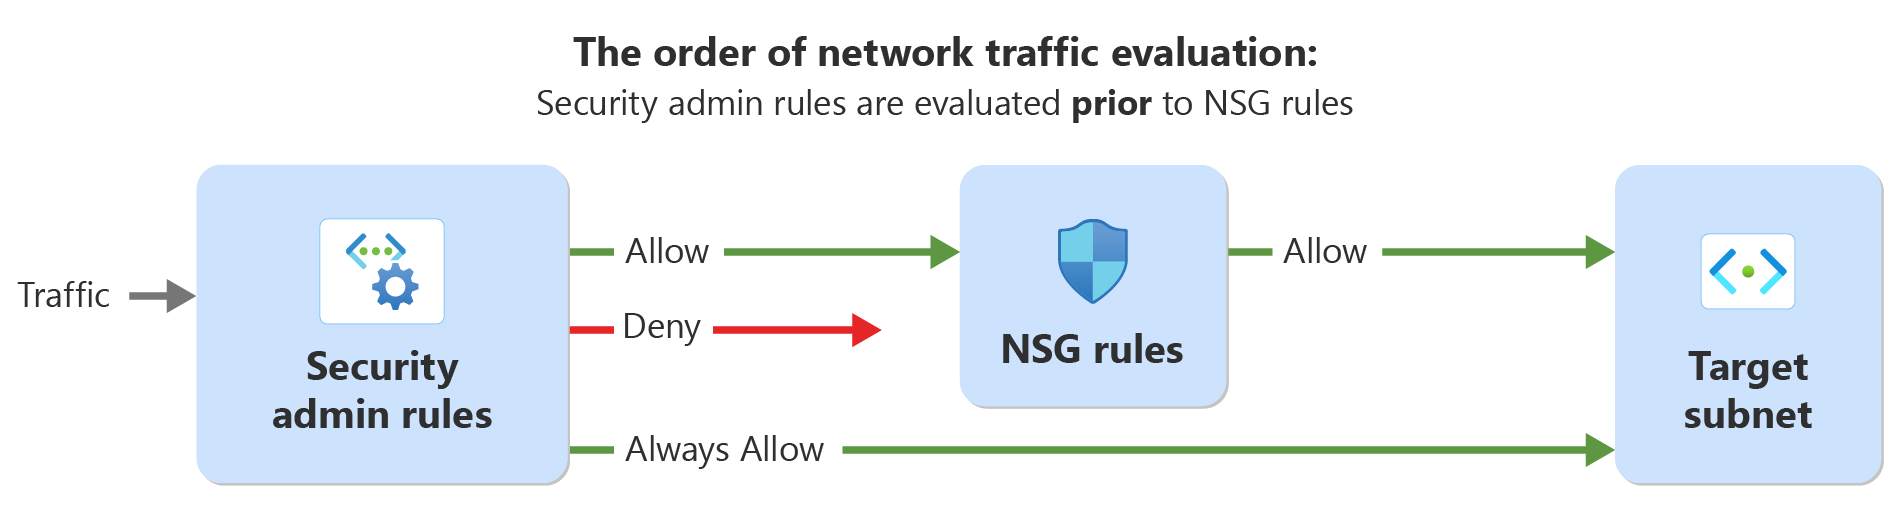 Diagramme montrant l’ordre d’évaluation du trafic réseau avec les règles d’administration de la sécurité et les règles de sécurité du réseau.